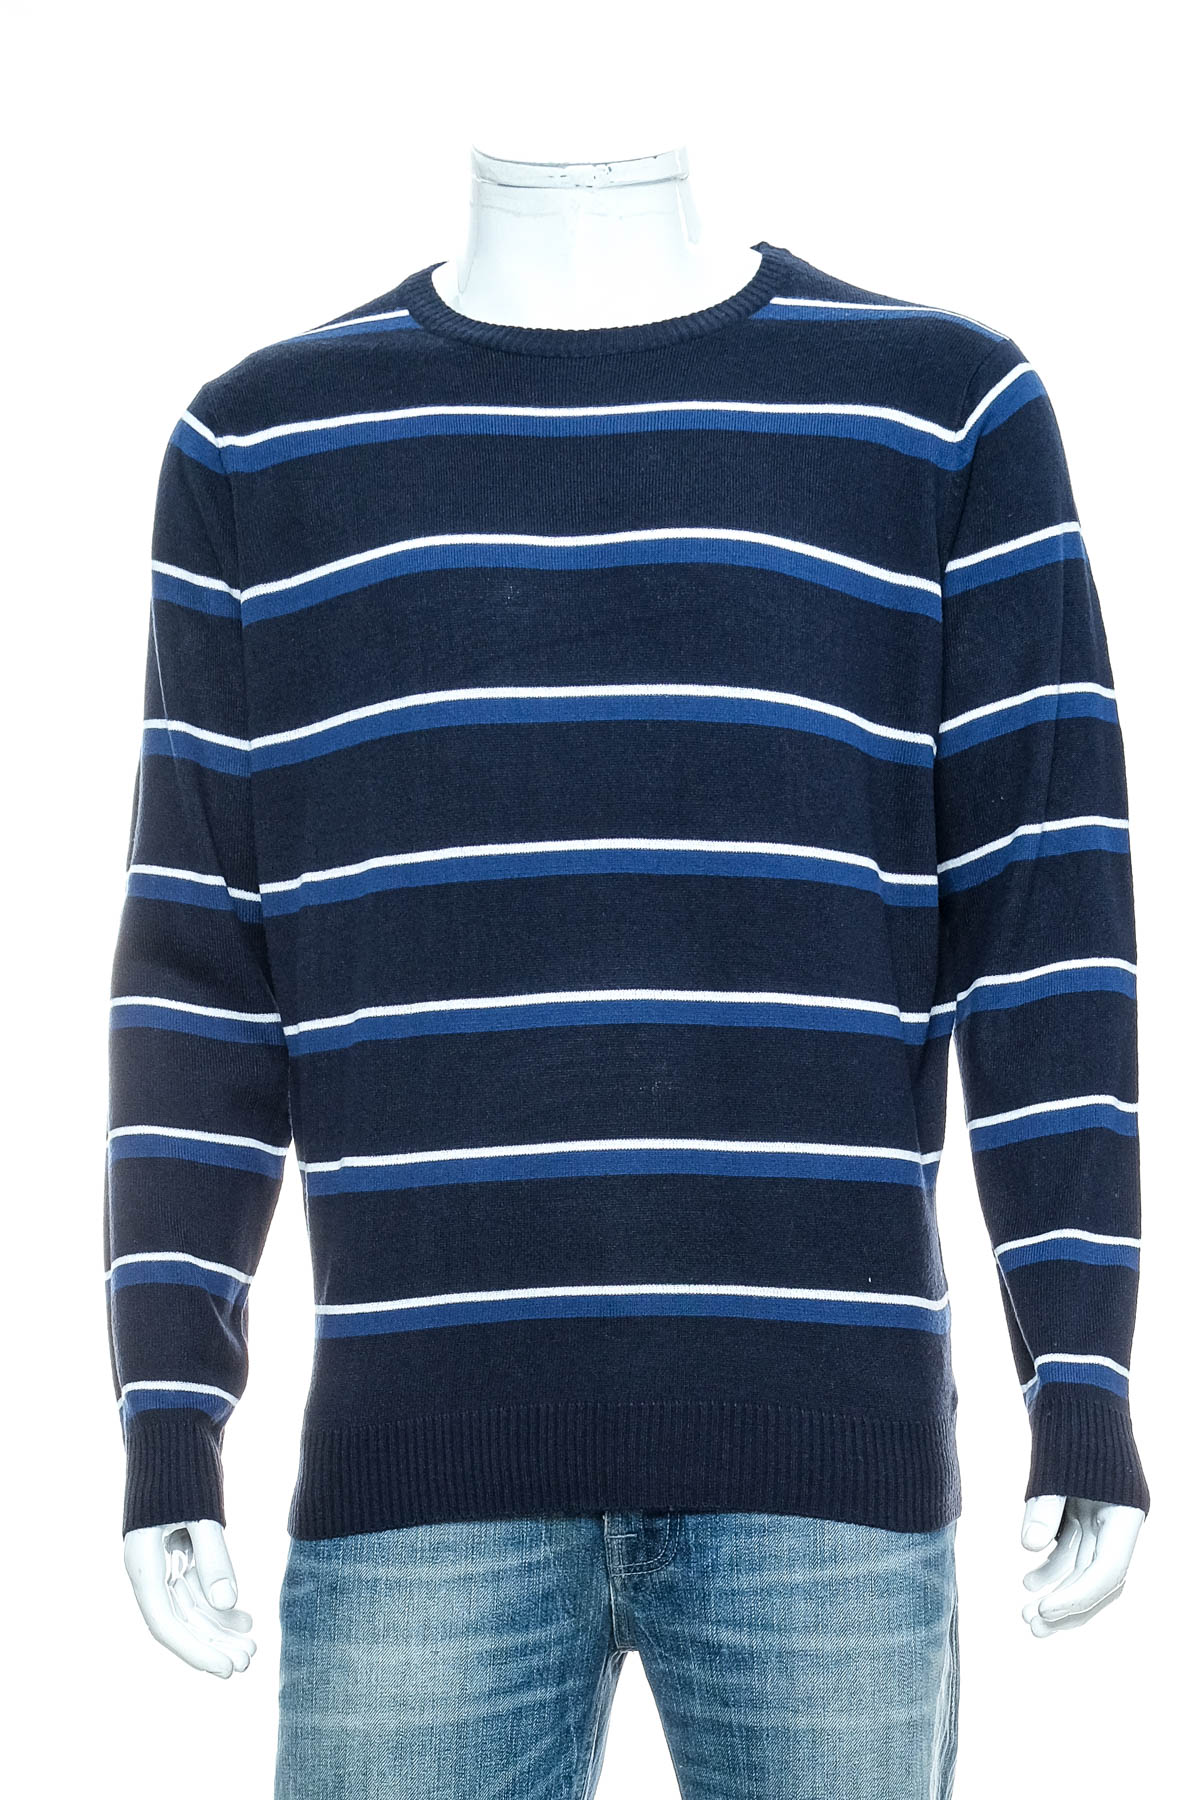 Men's sweater - Identic - 0